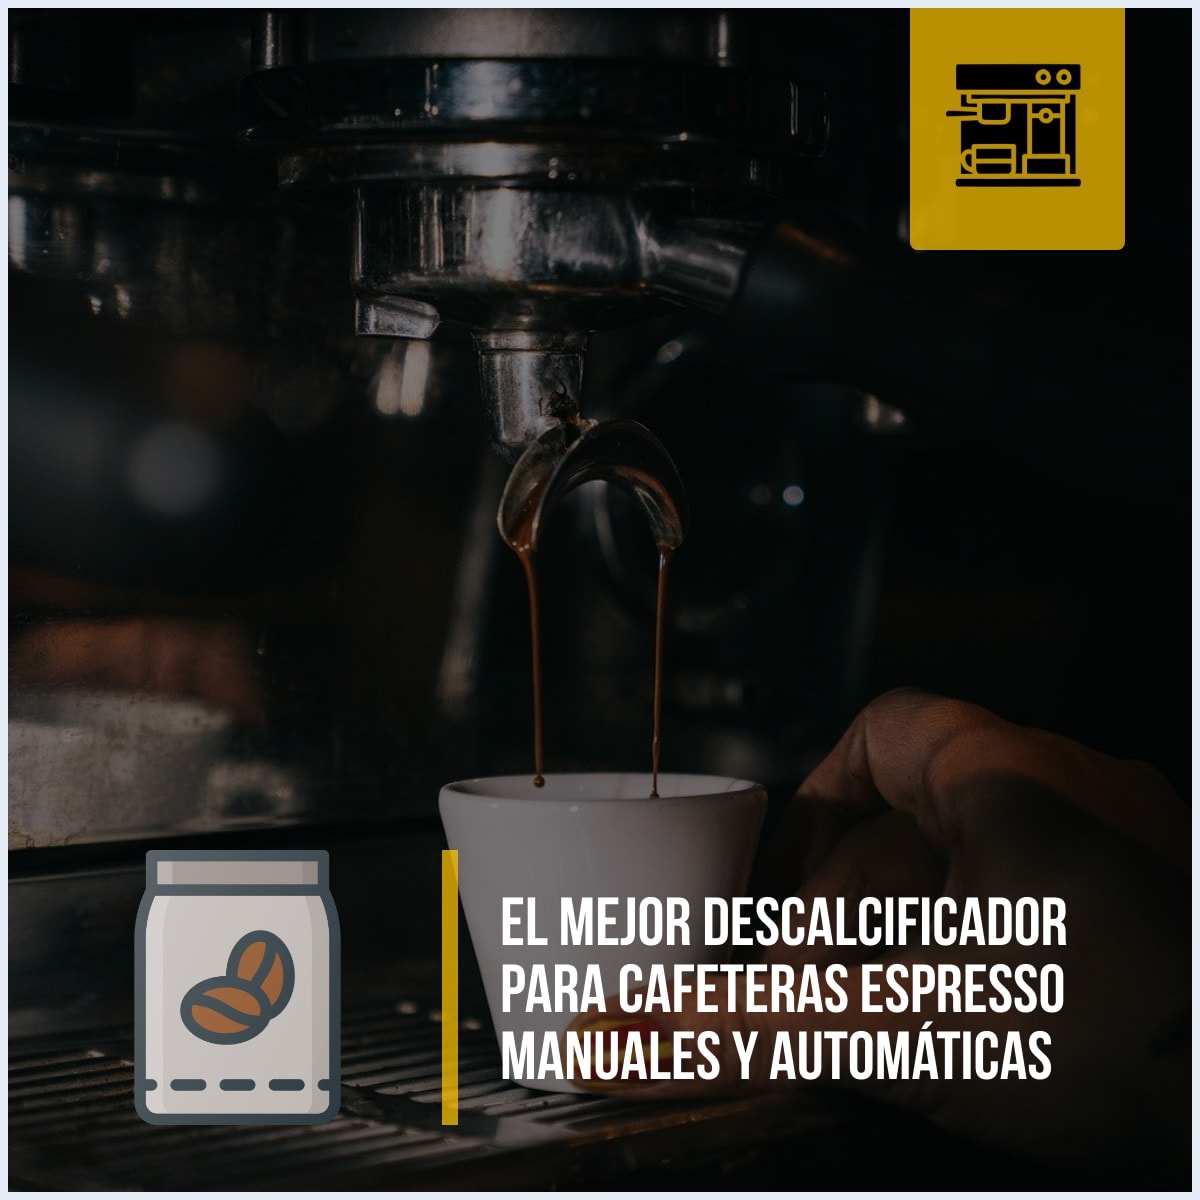 Productos descalcificadores para máquinas de café espresso manuales y automáticas recomendados